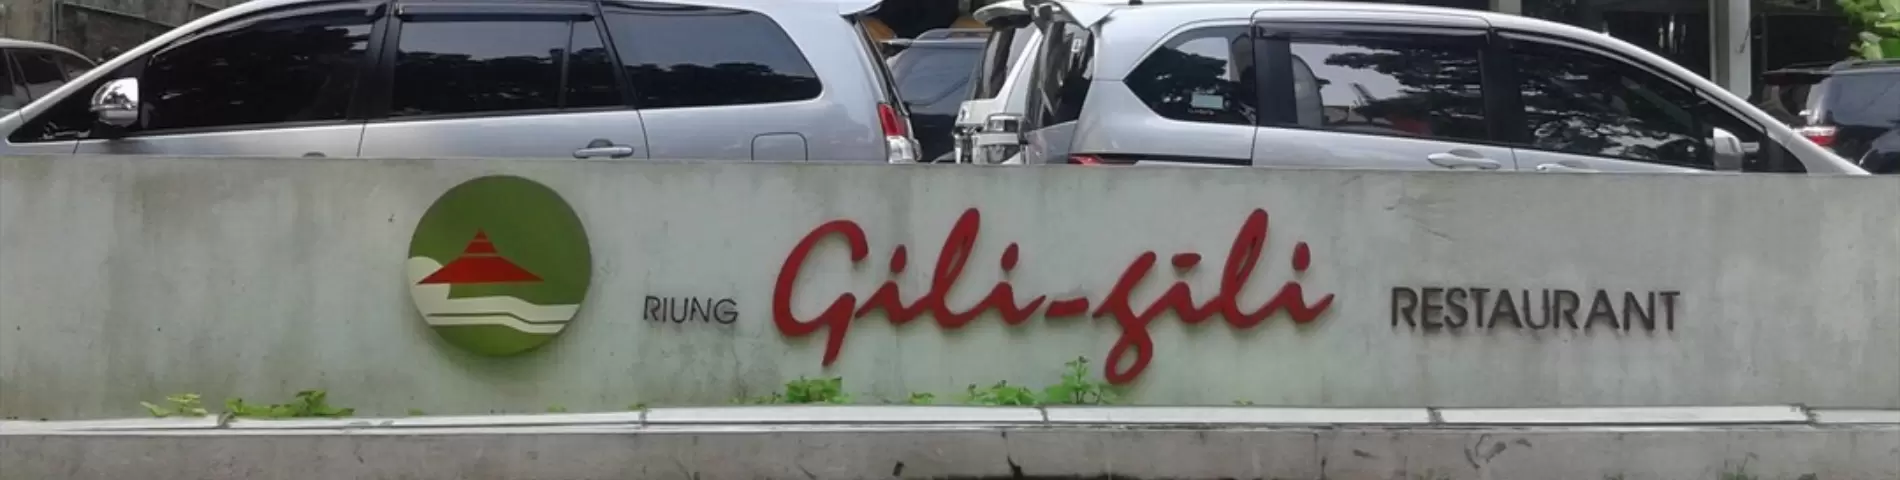 Riung Gili Gili Restaurant